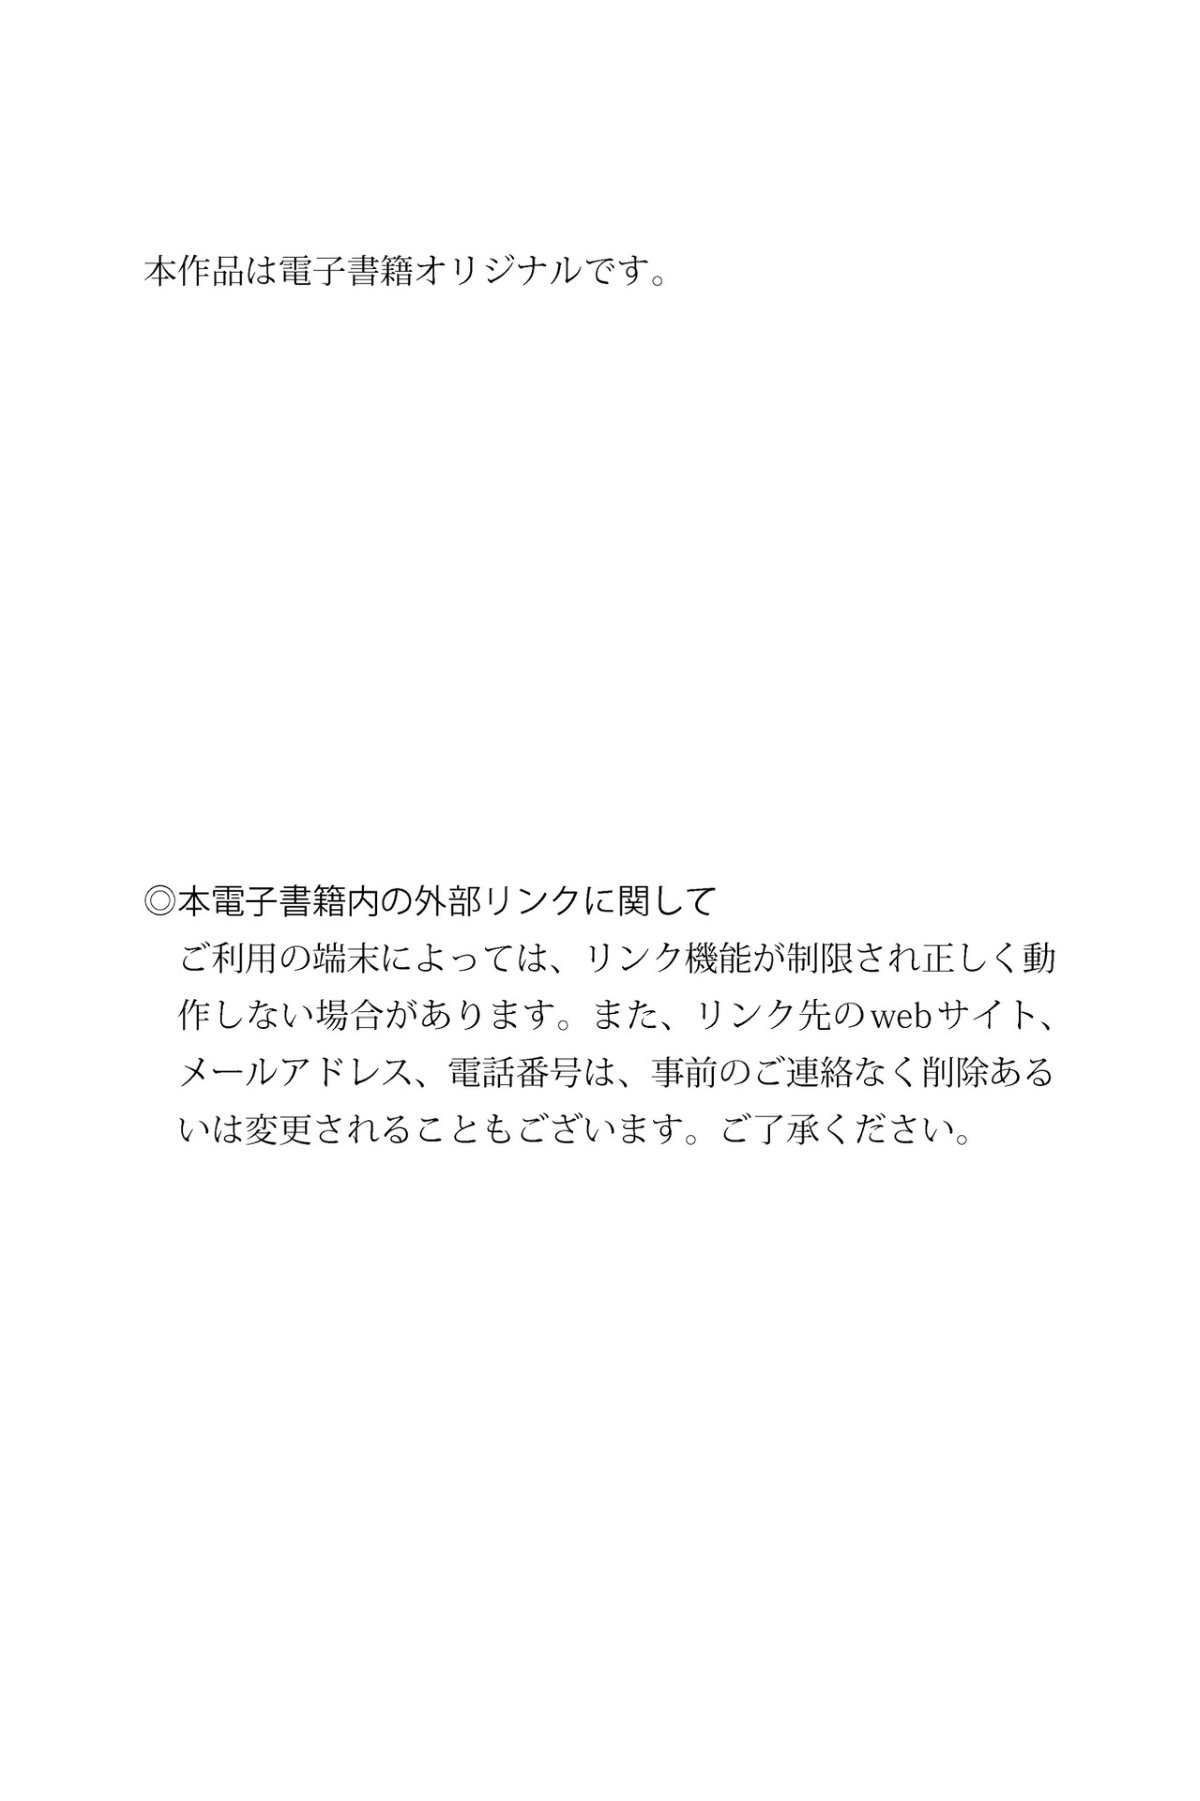 FRIDAY Digital Photobook Konan Koyoi 小宵こなん Marshmallow H Cup Vol 2 ましゅまろＨカップ Vol 2 2022 06 10 0077 8844165745.jpg